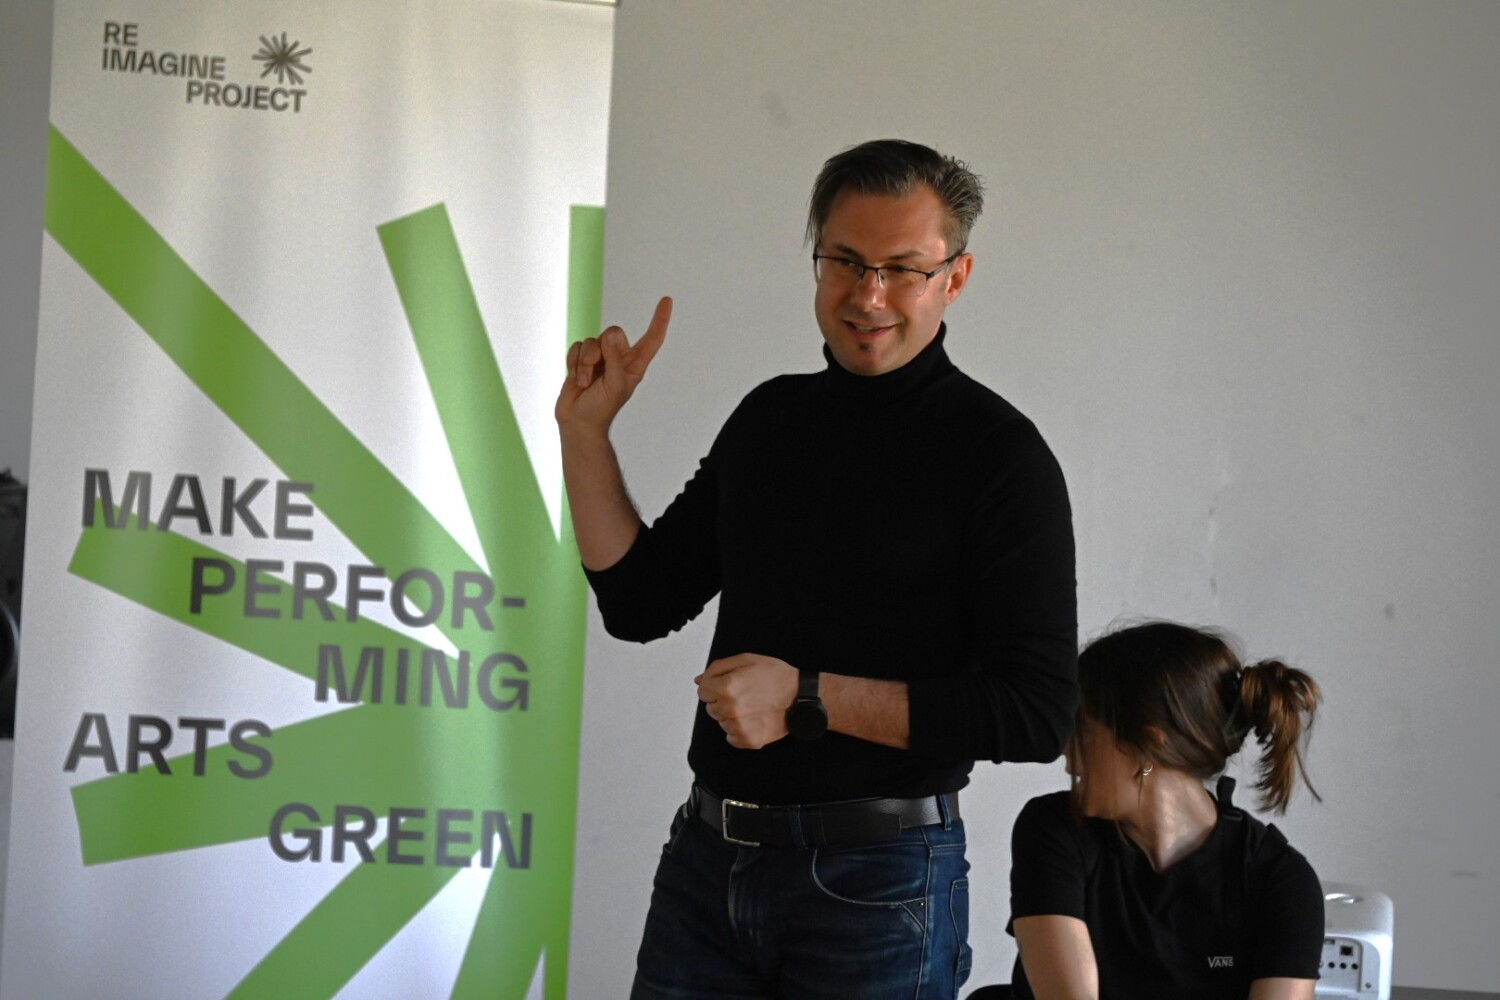 Първата европейска творческа резиденция RE-IMAGINE Green ще се състои в София през април